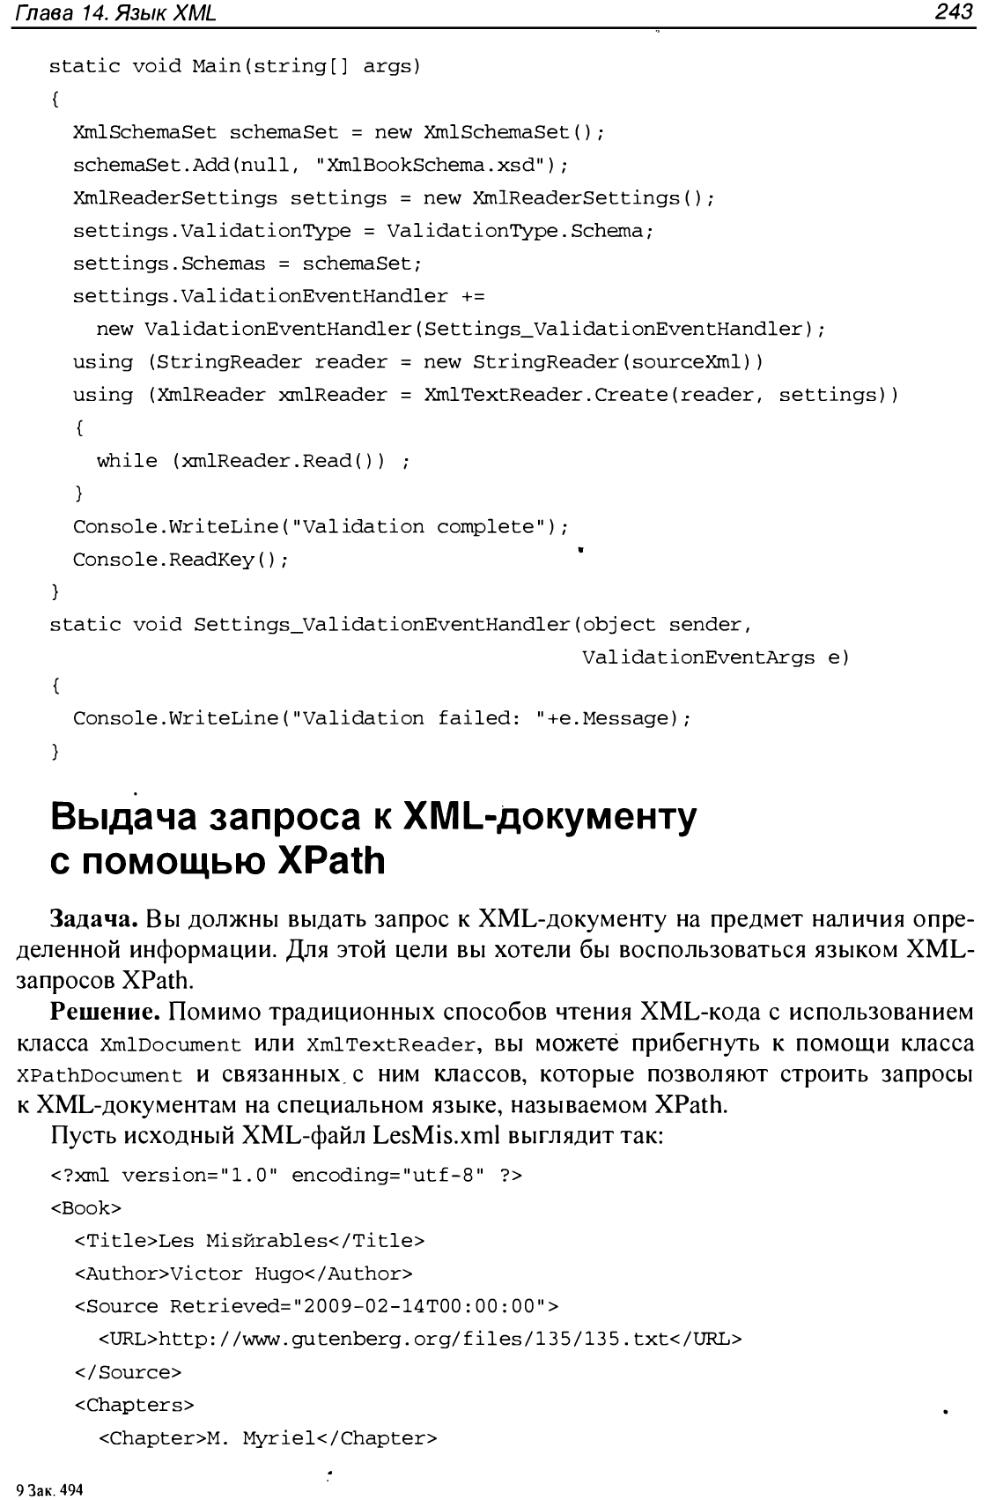 Выдача запроса к XML-документу с помощью XPath